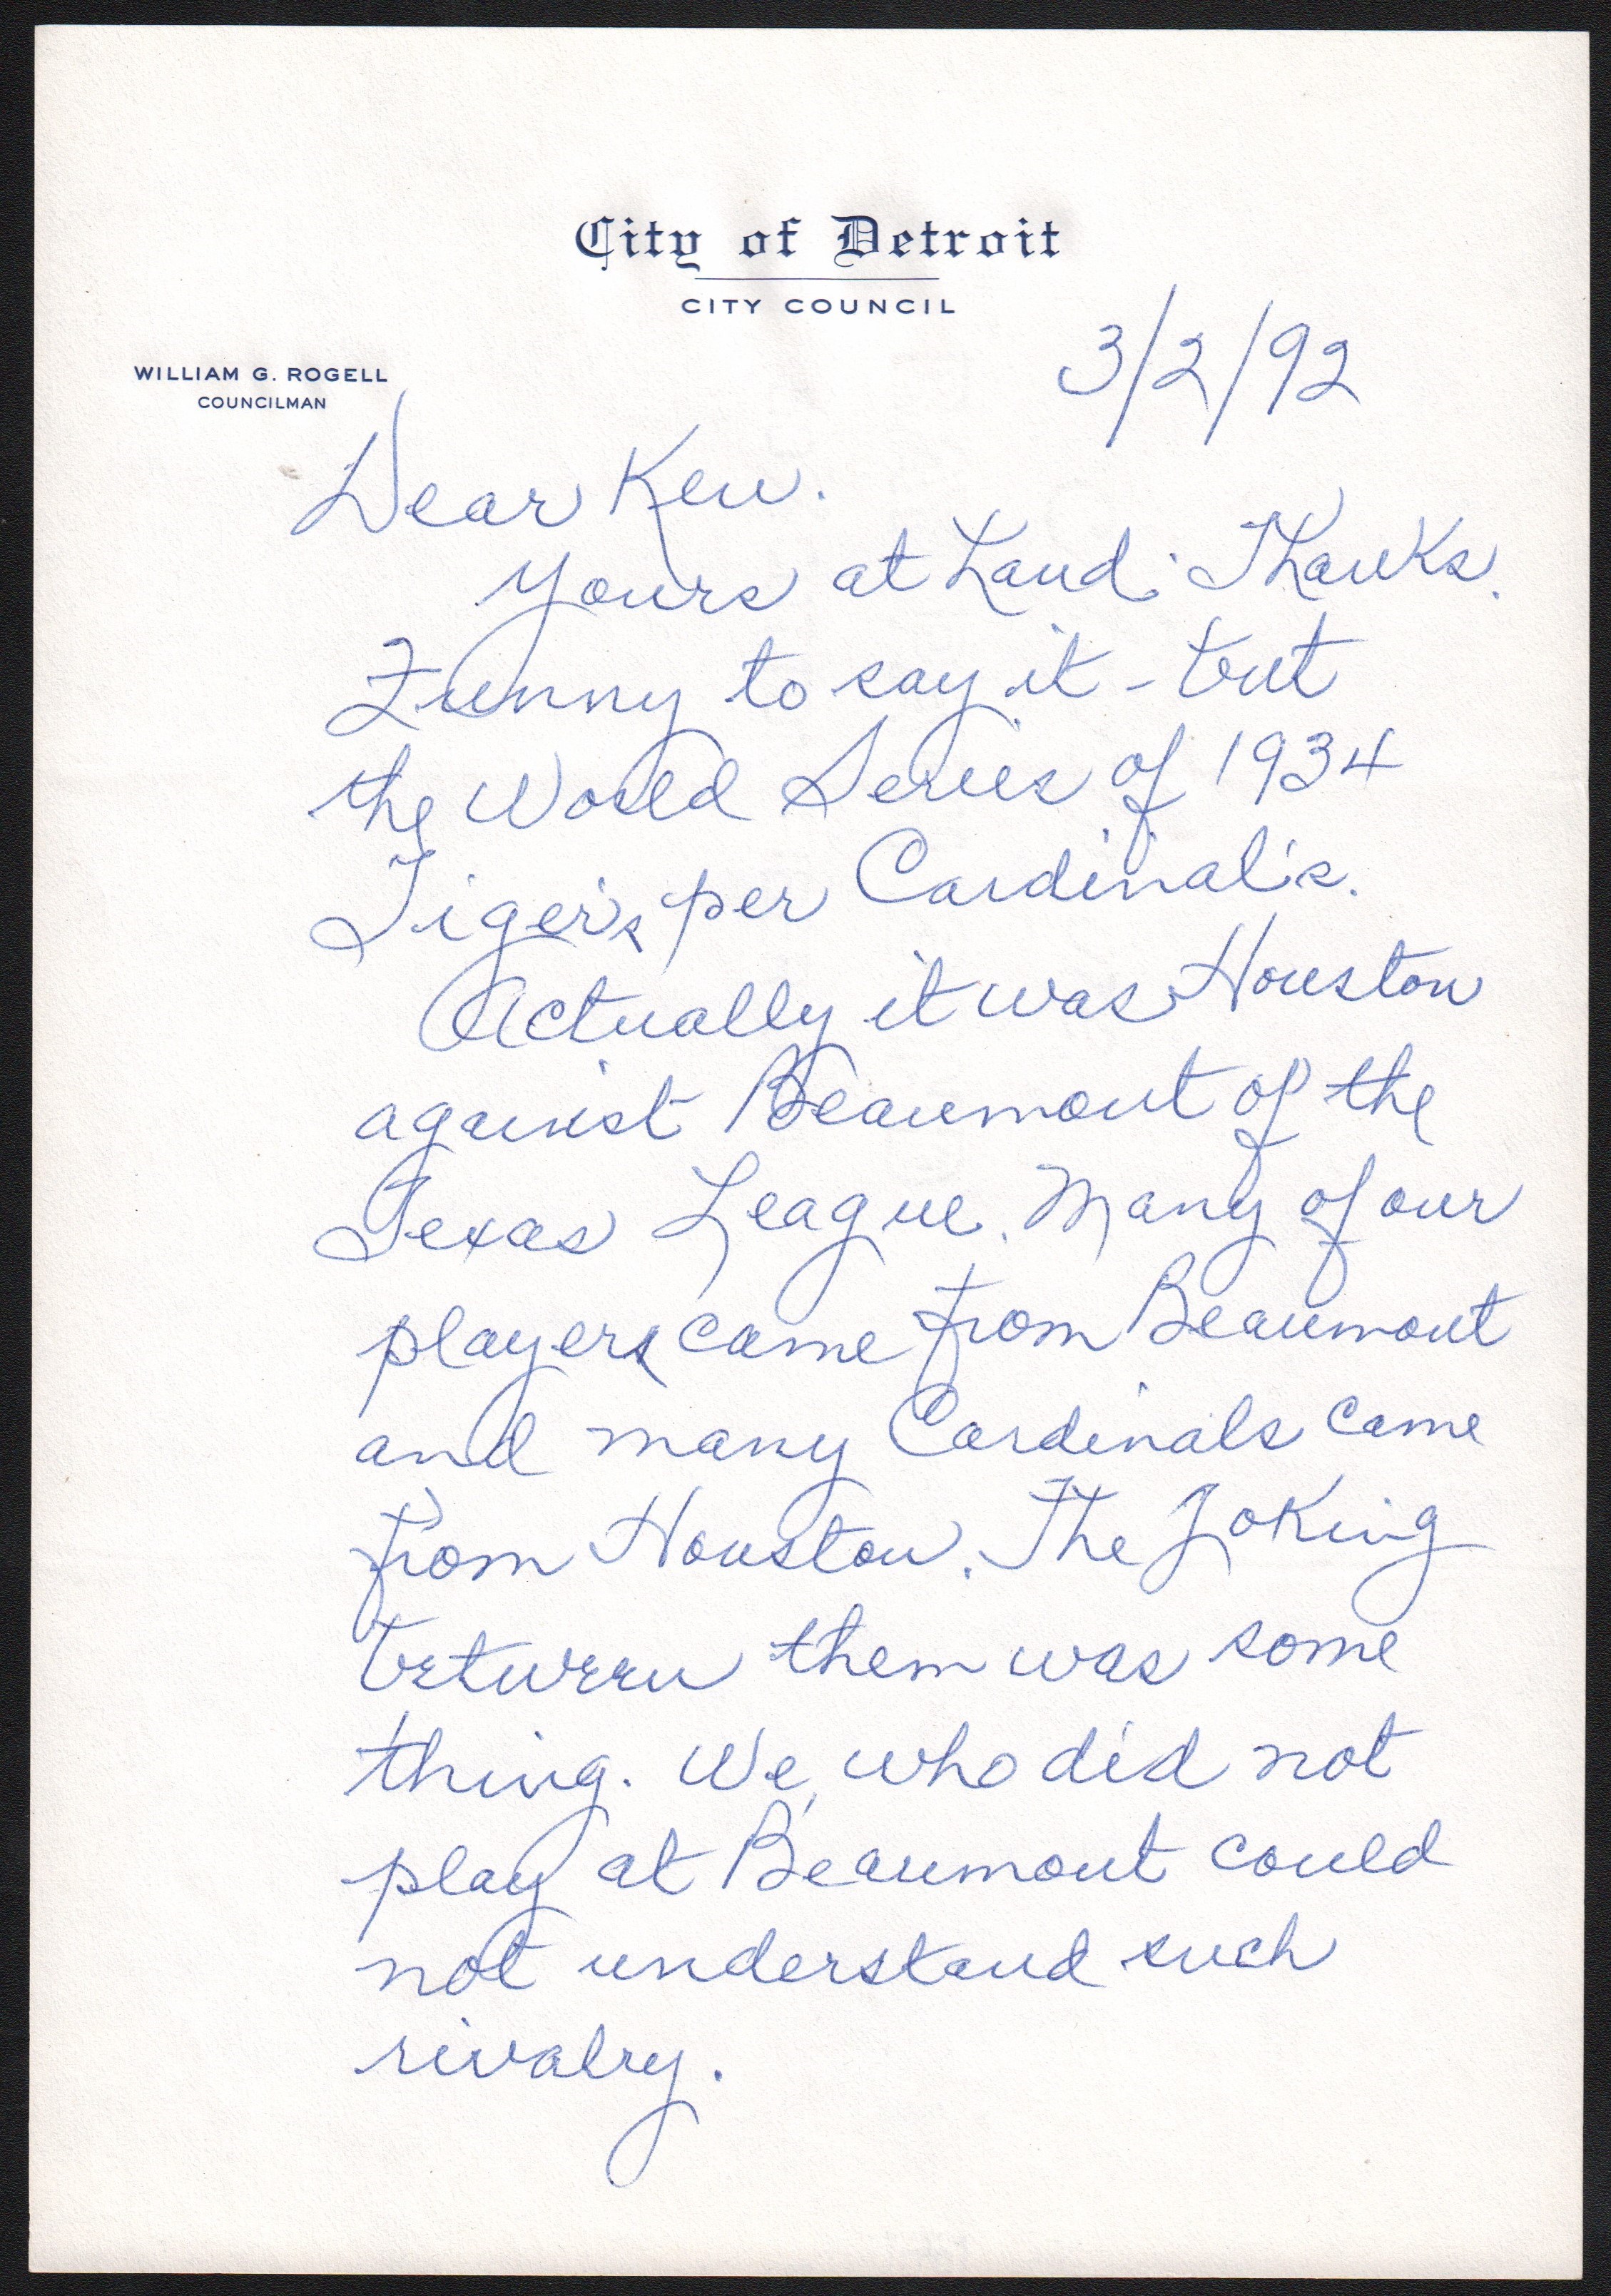 Baseball Autographs - 1992 Billy Rogell Handwritten Letter r.e Ducky Medwick 1934 World Series Riot